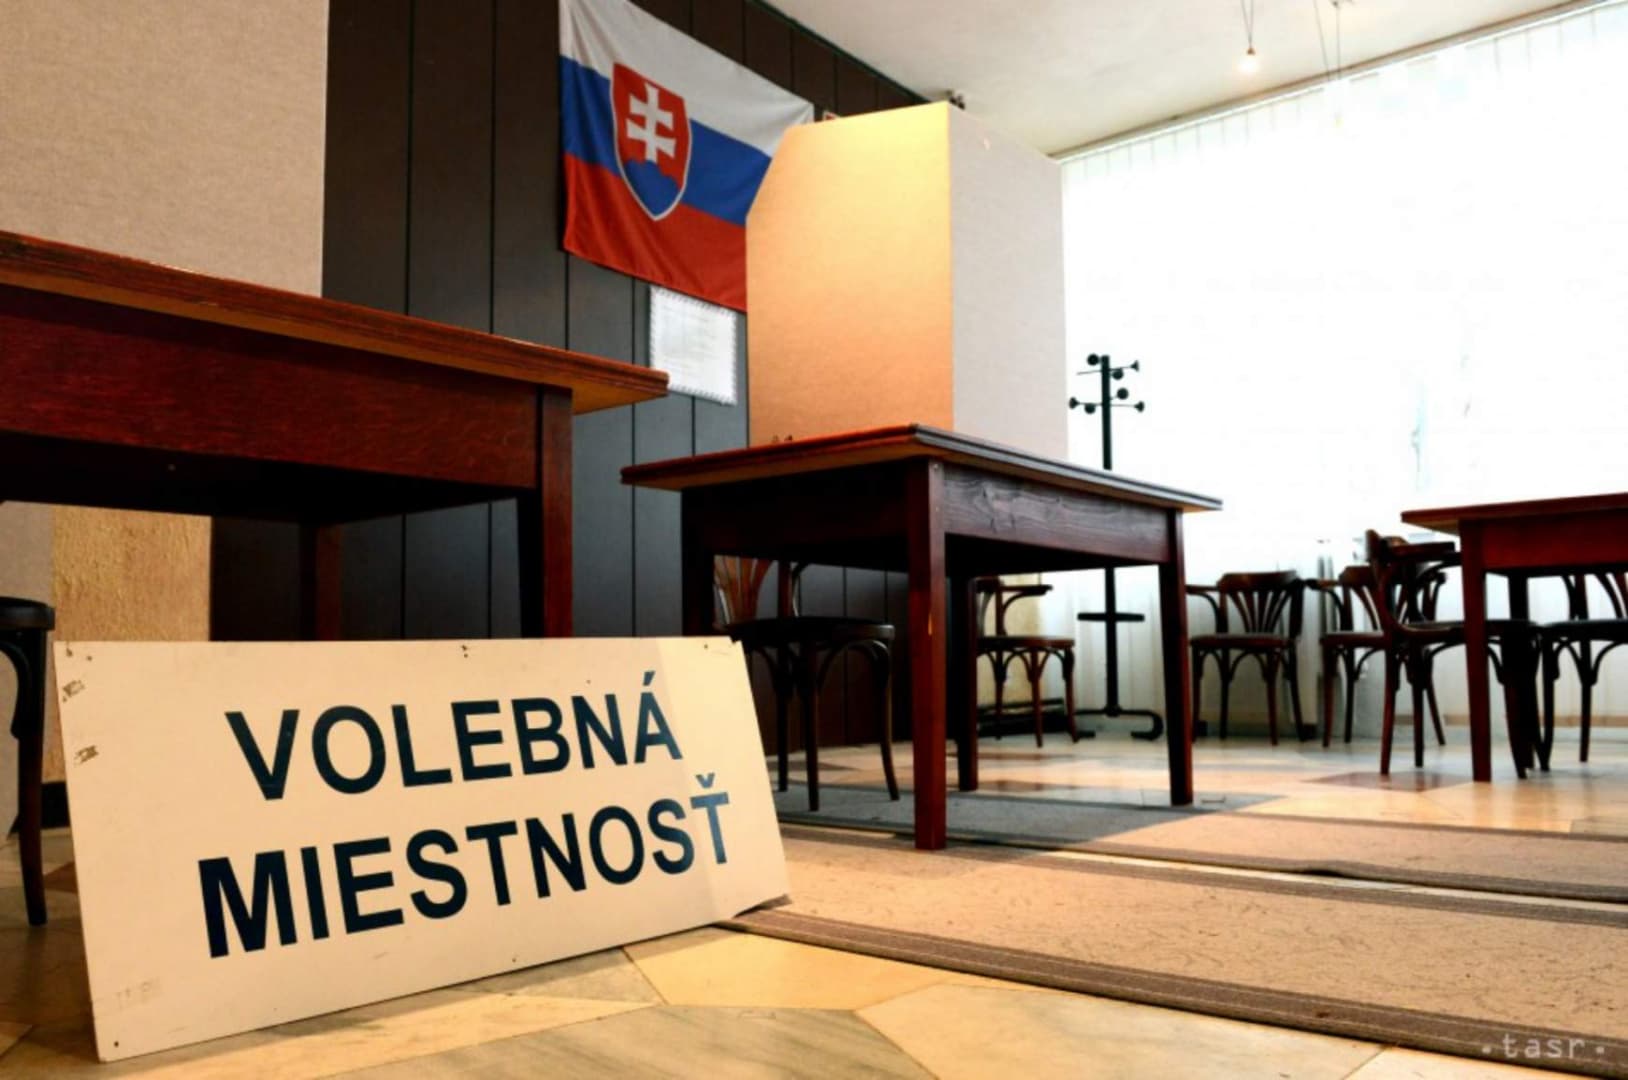 Visszautasítják a minisztériumok, hogy a NATO beavatkozik a szlovákiai választásba